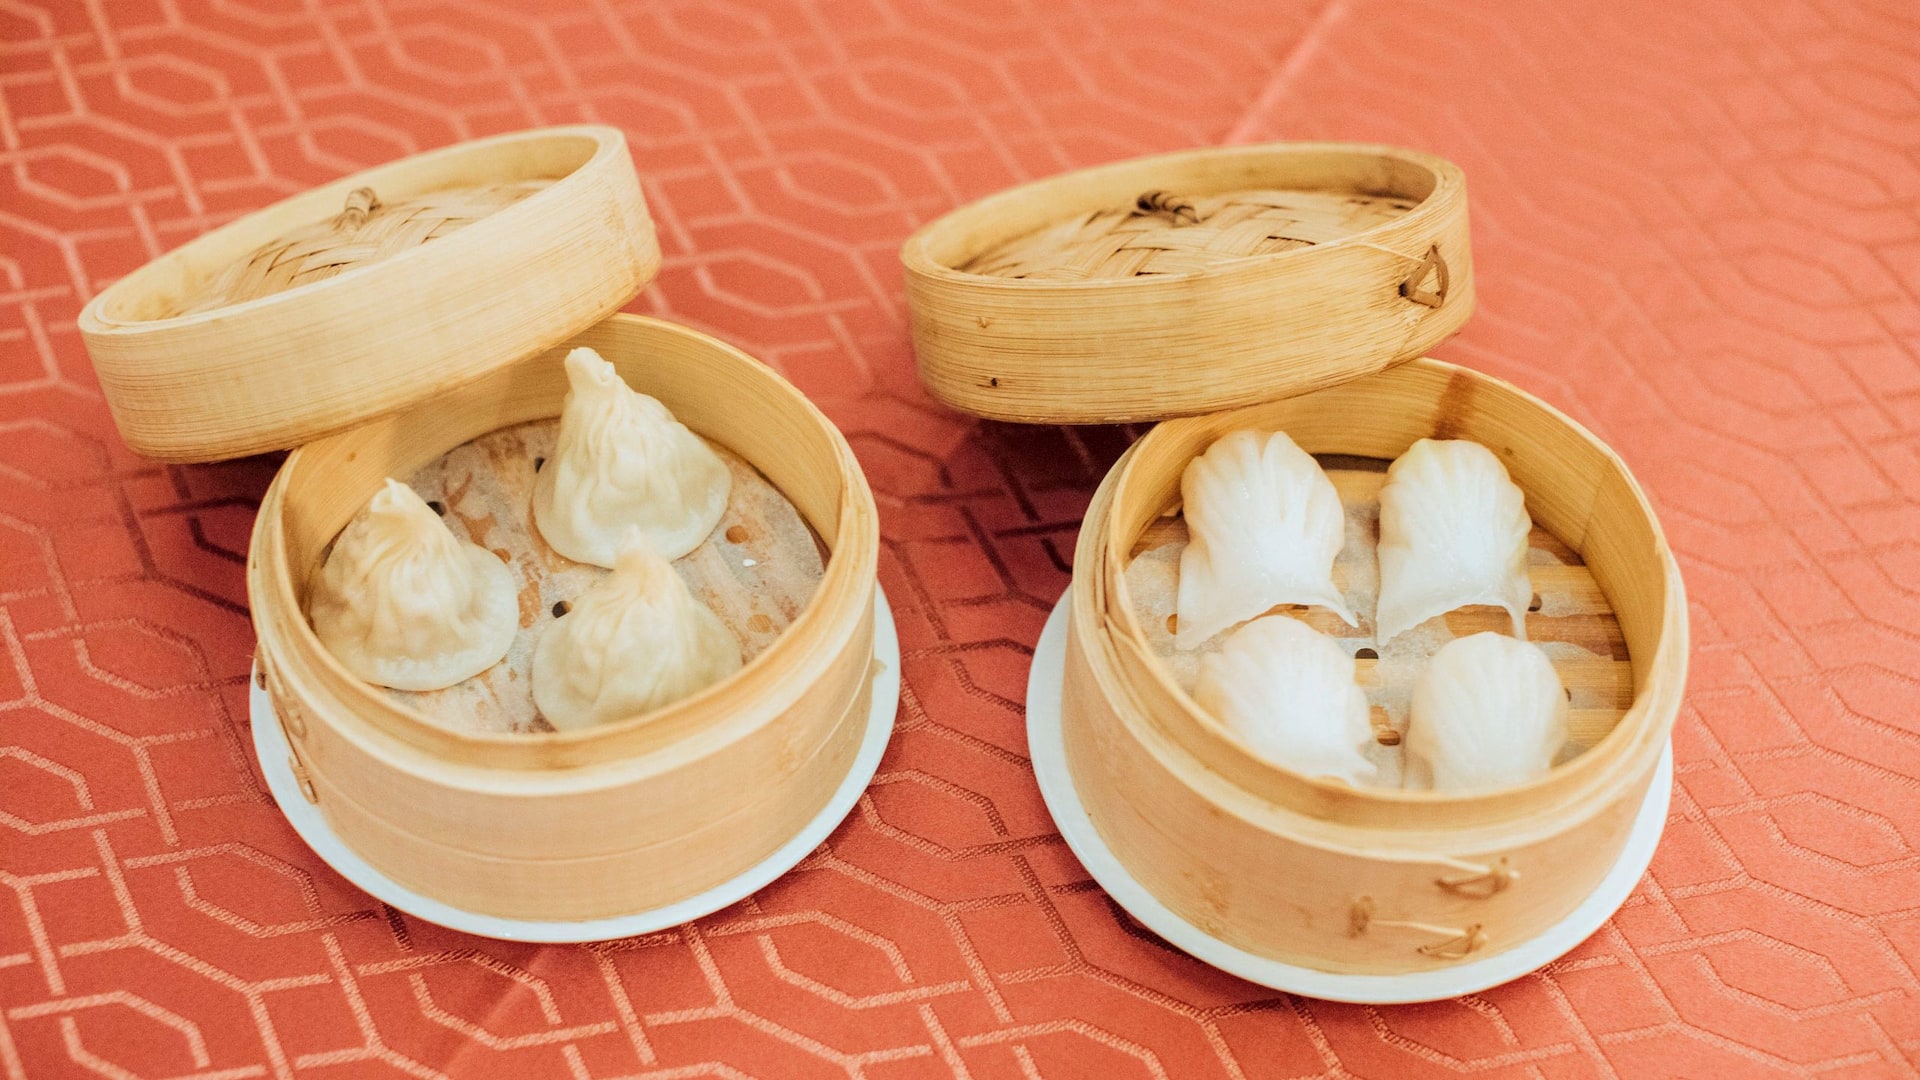 Shuang Ba Pork Dumplings Shrimp Dumplings